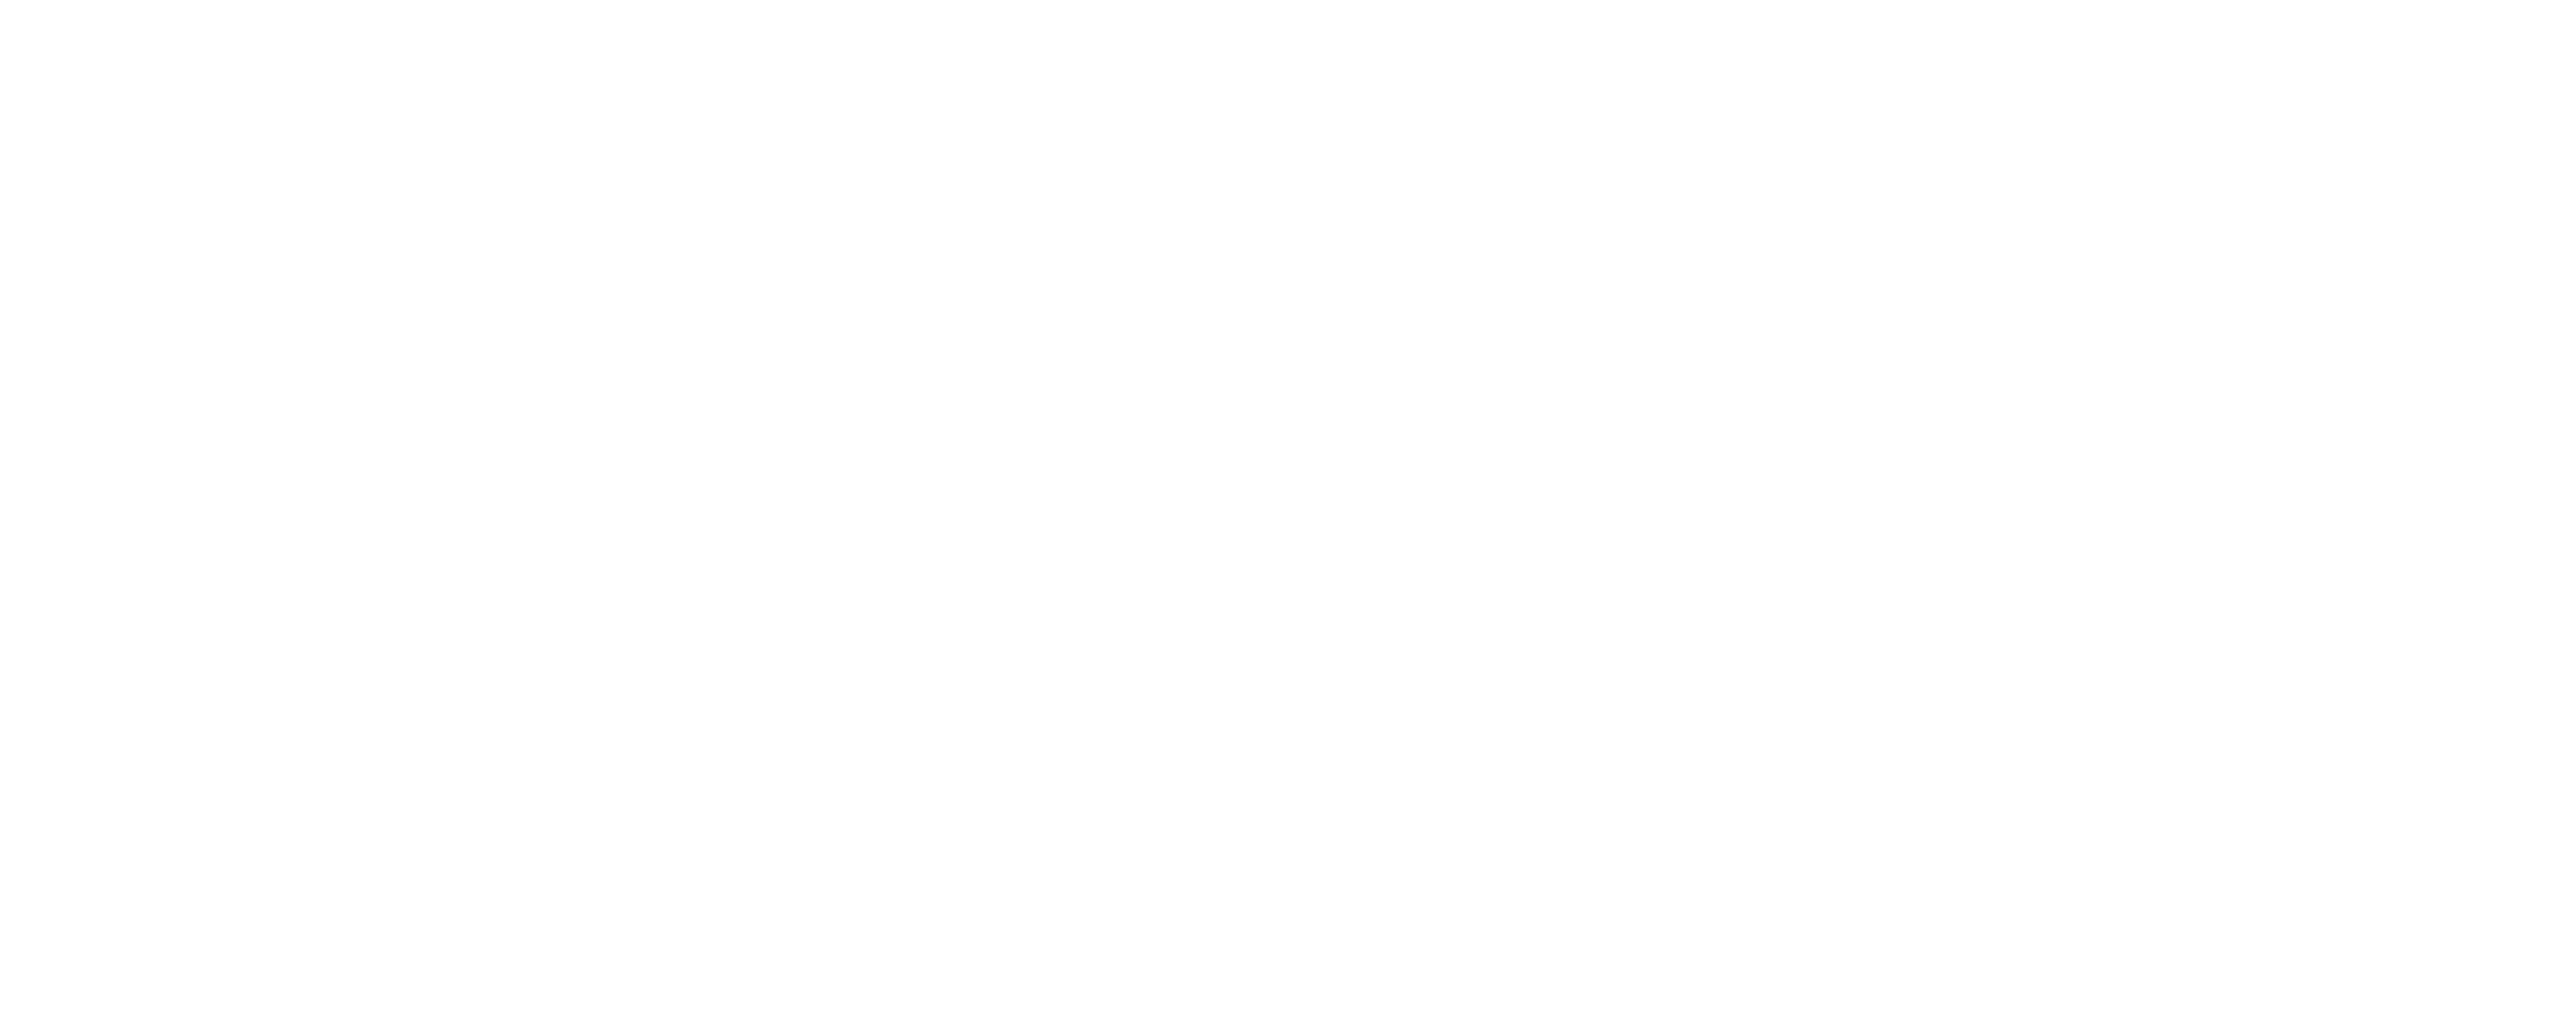 lcc-visual